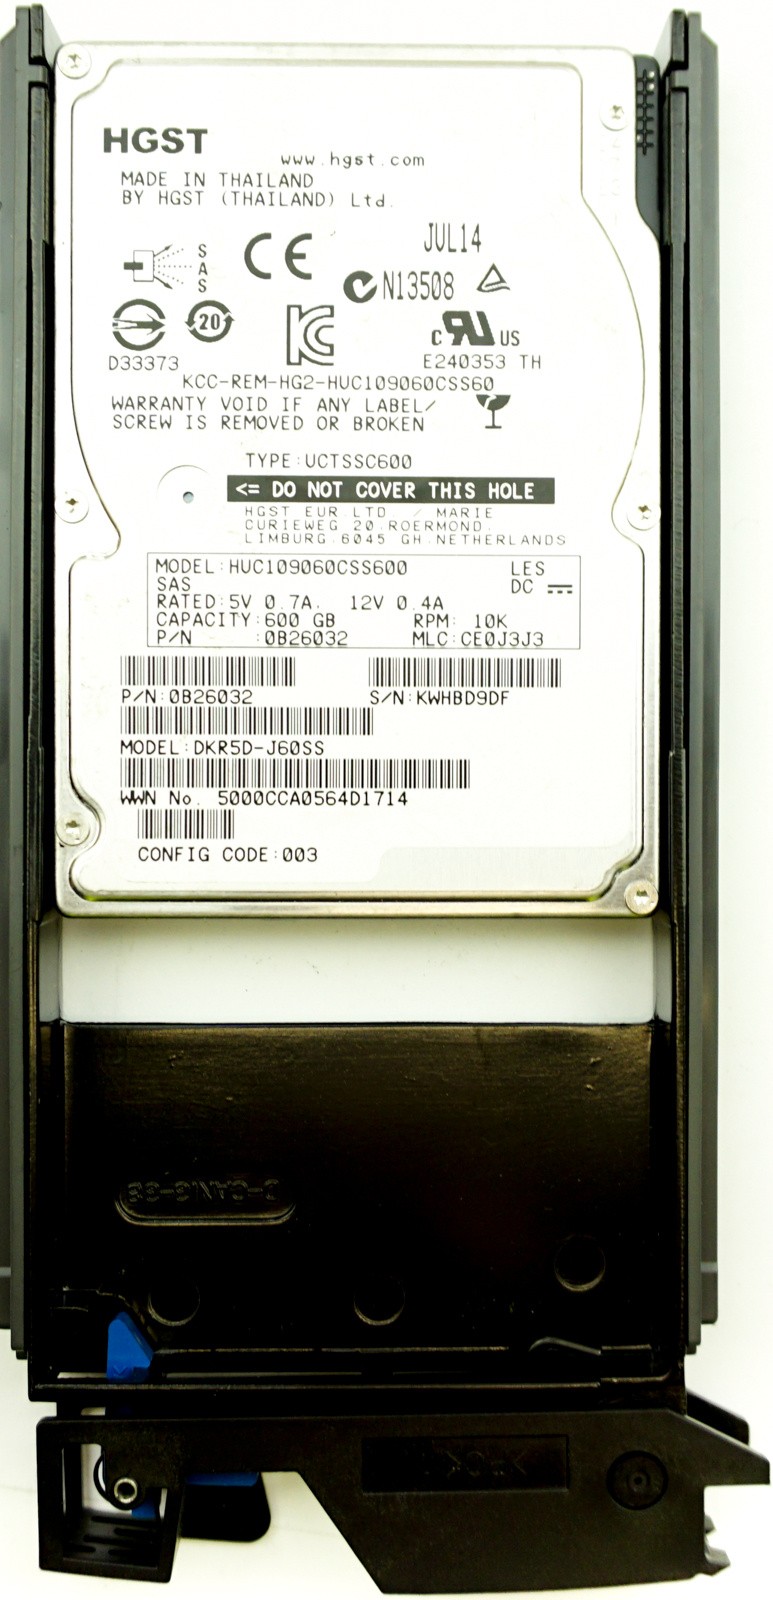 HDS (5541892-A) 600GB SAS (SFF) 10K HDD in Hot-Swap Caddy (0B26032)